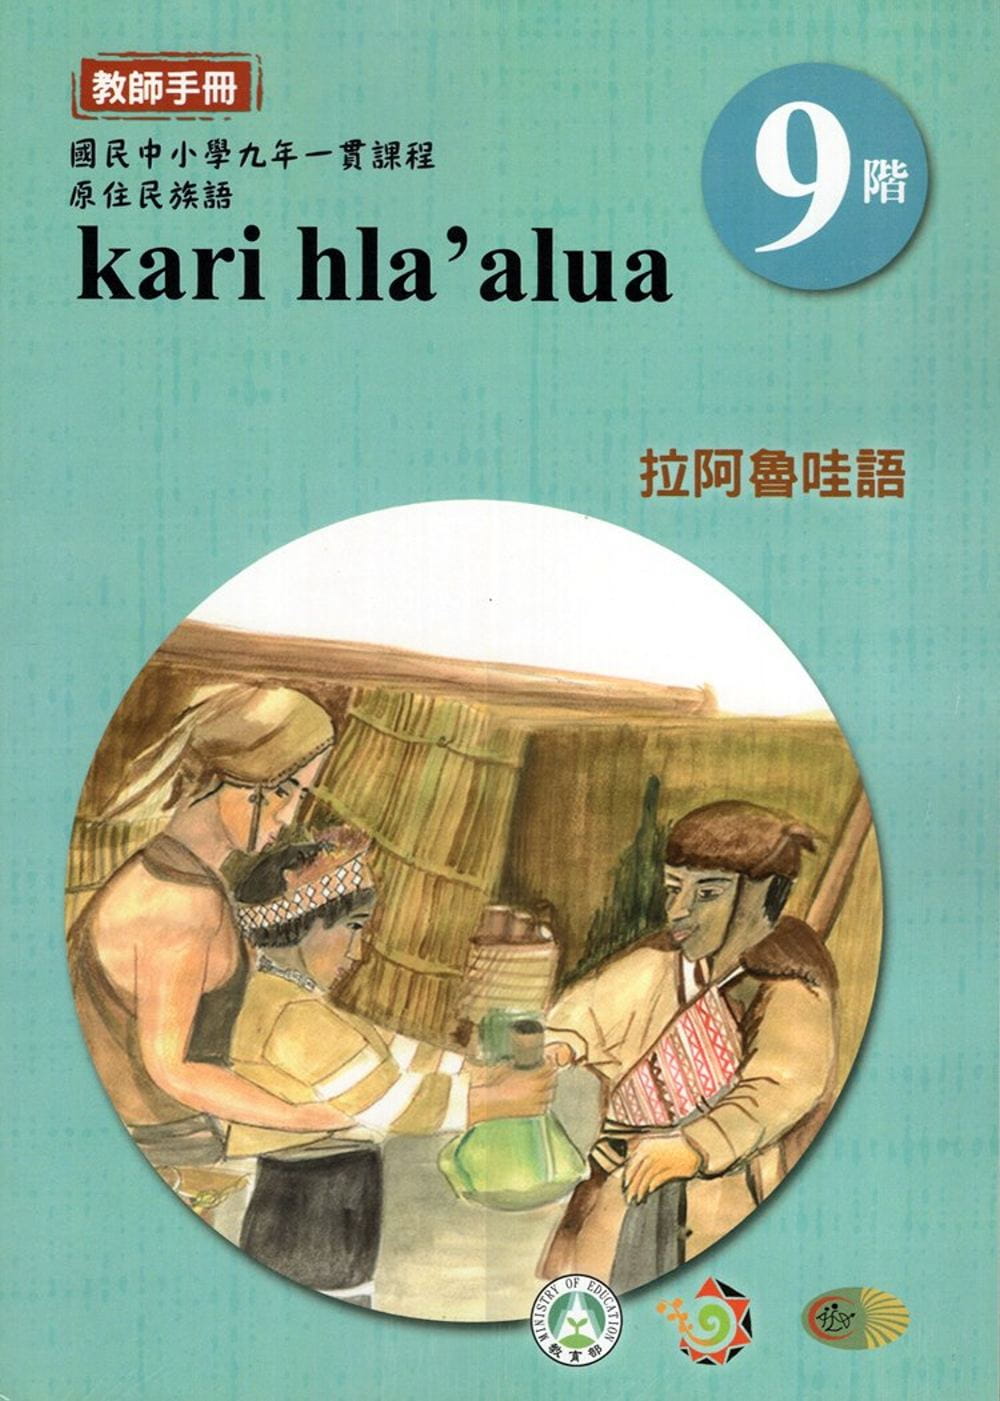 原住民族語拉阿魯哇語第九階教師手冊(2版)